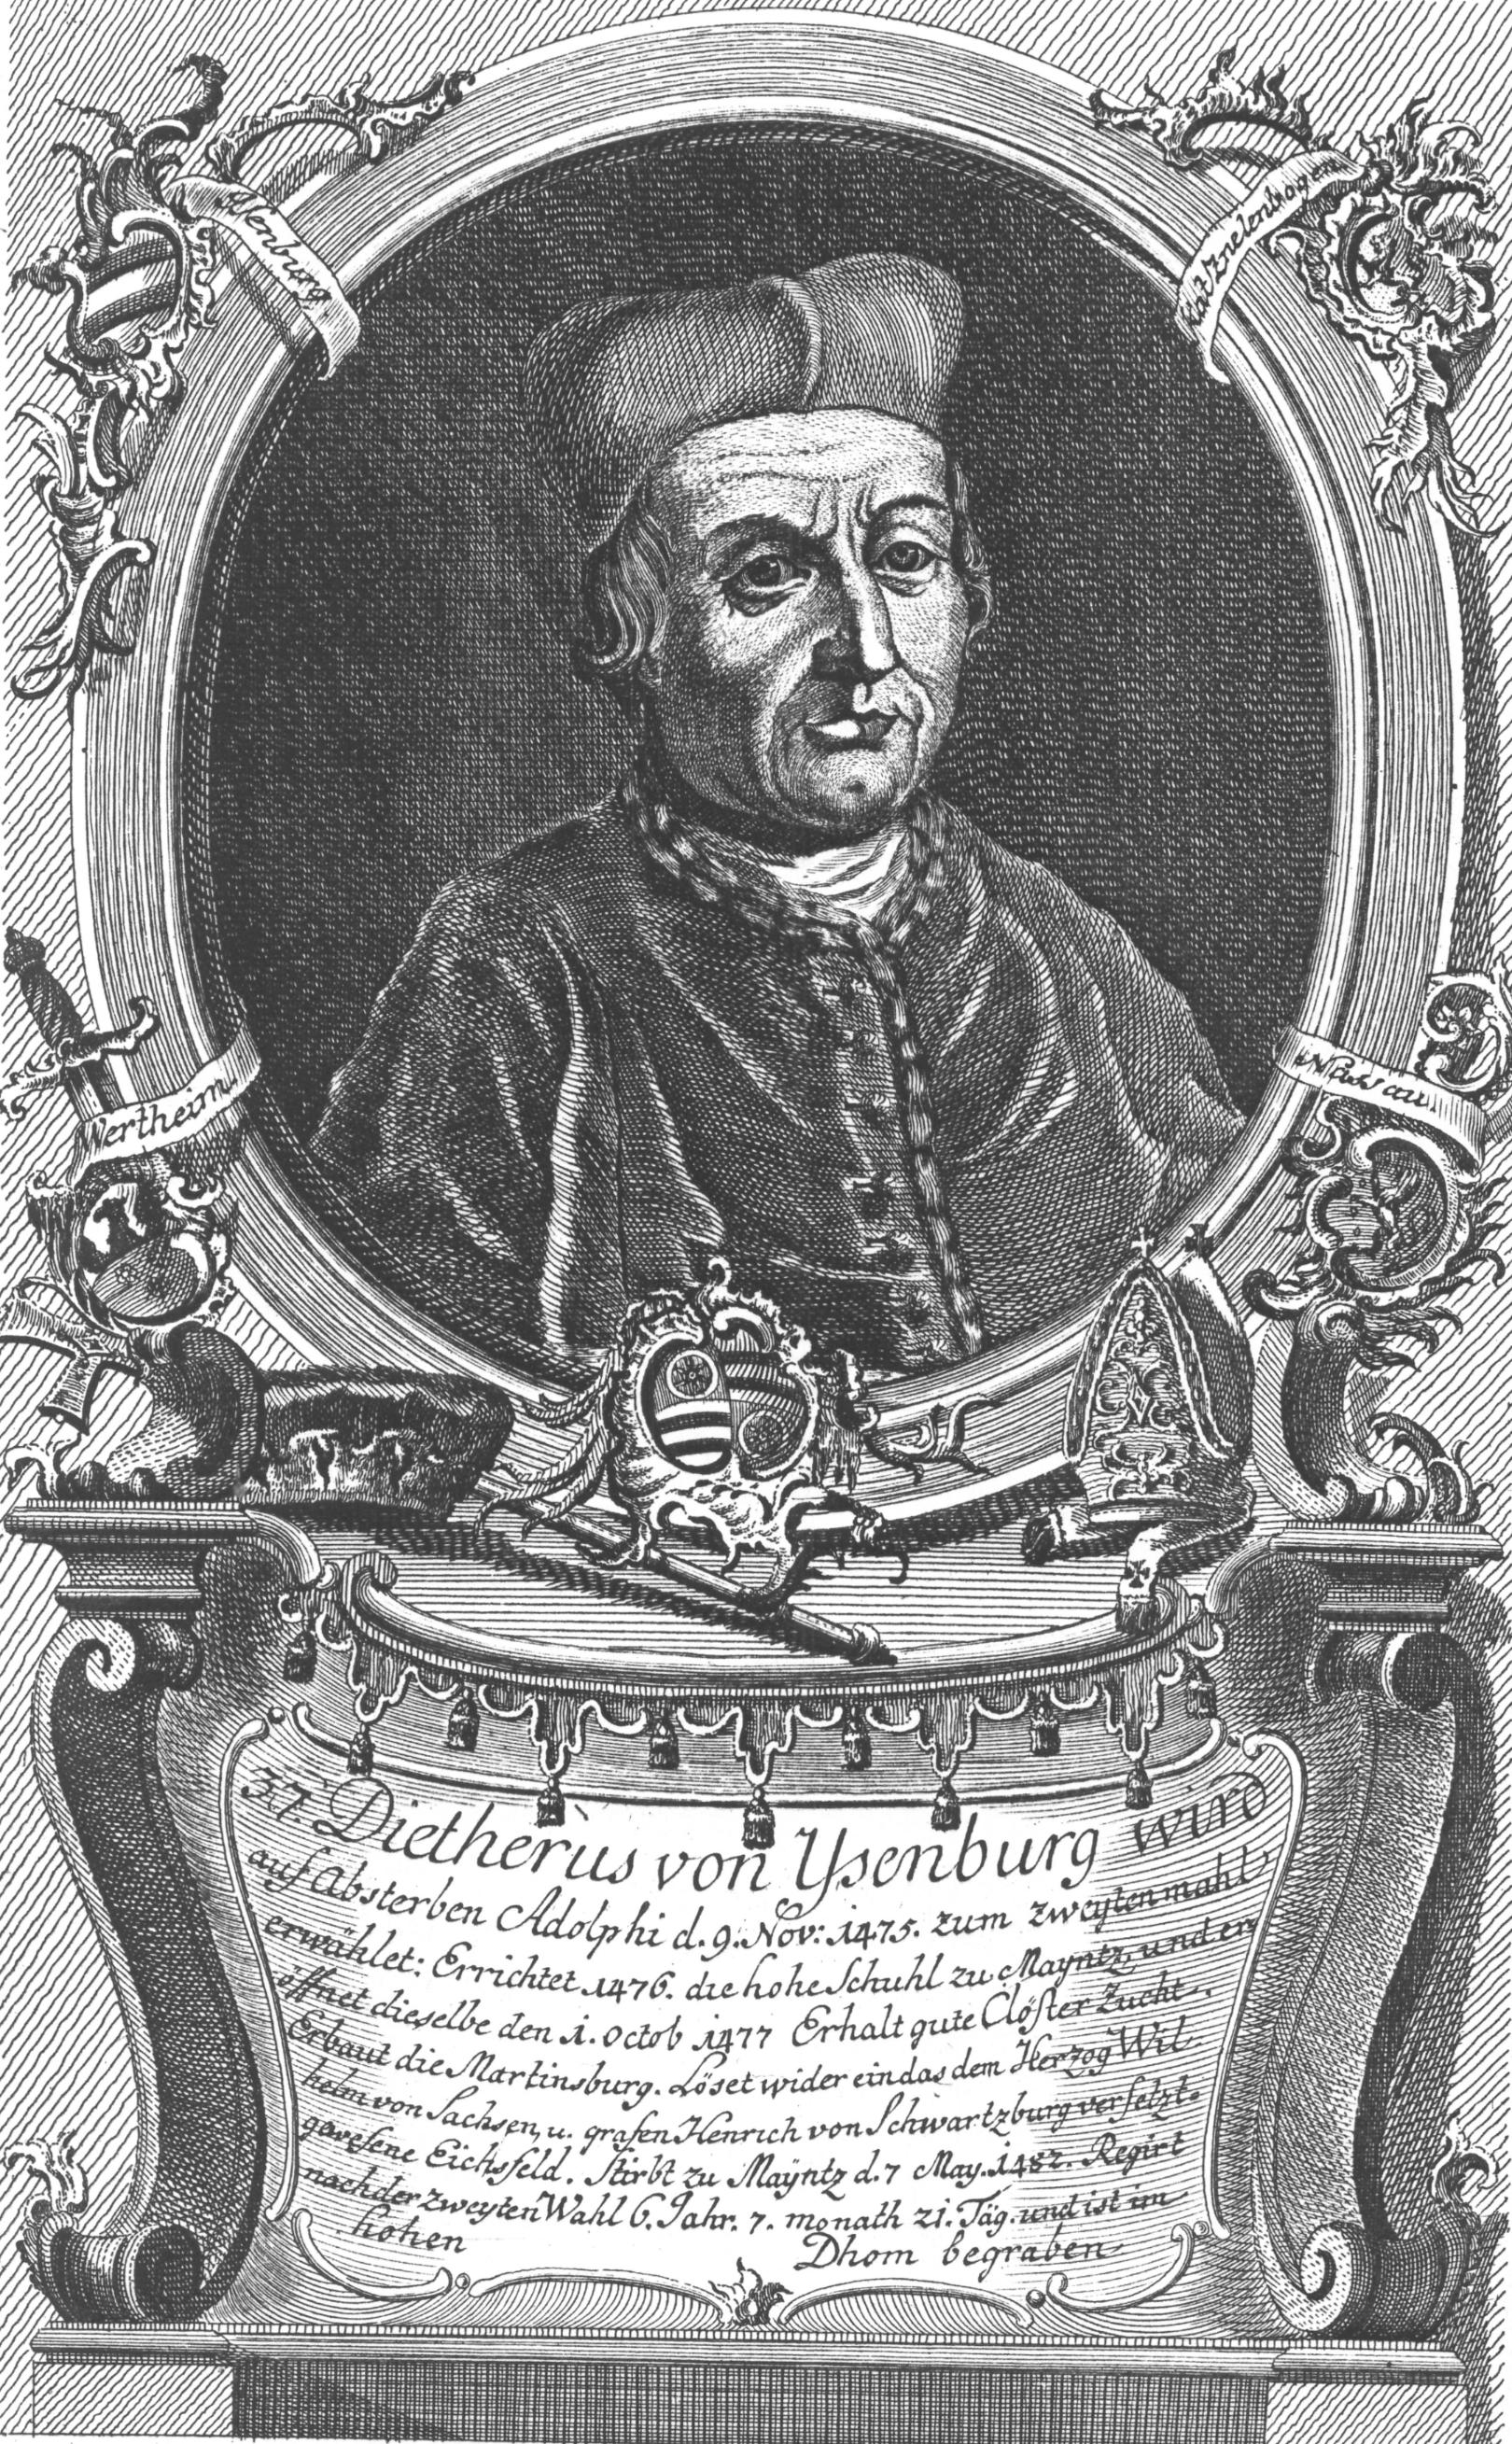 Diether von Isenburg, zur zweiten Amtsperiode, gezeichnet von Wilhelm Christian Rücker, ca. 1774 (c) Wilhelm Christian Rücker / IMKG